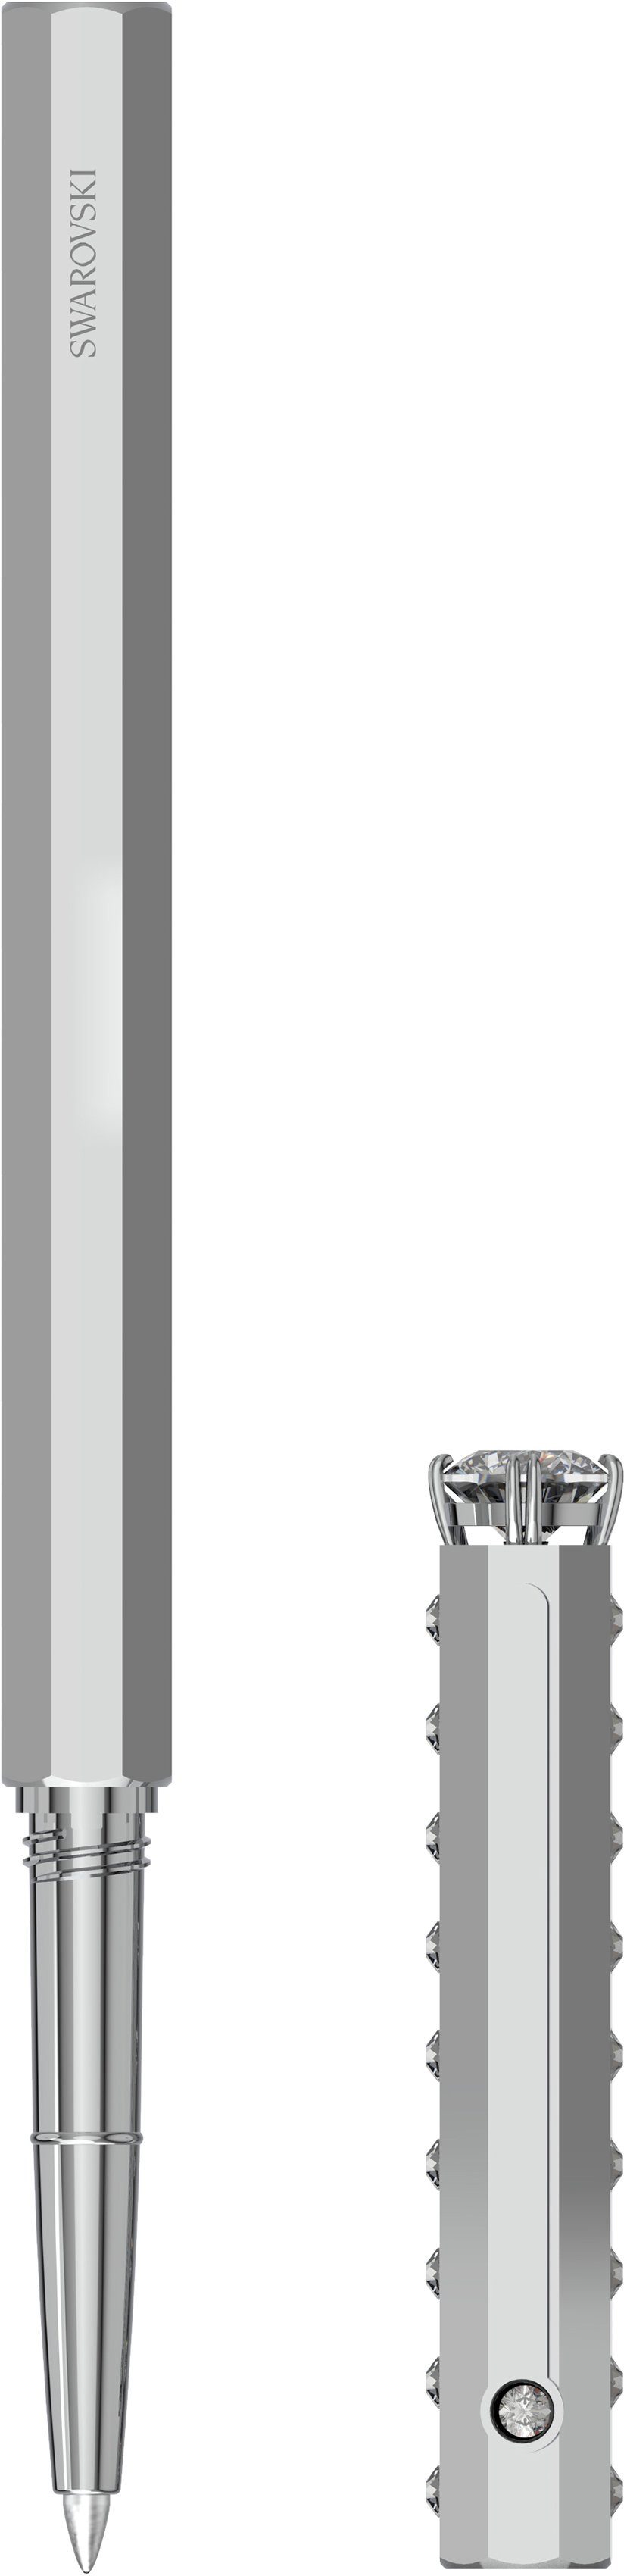 Swarovski Kugelschreiber Klassisch, 5627168, 5631209, mit metallfarben-kristallweiß 5631210, Swarovski® 5634417, Kristallen